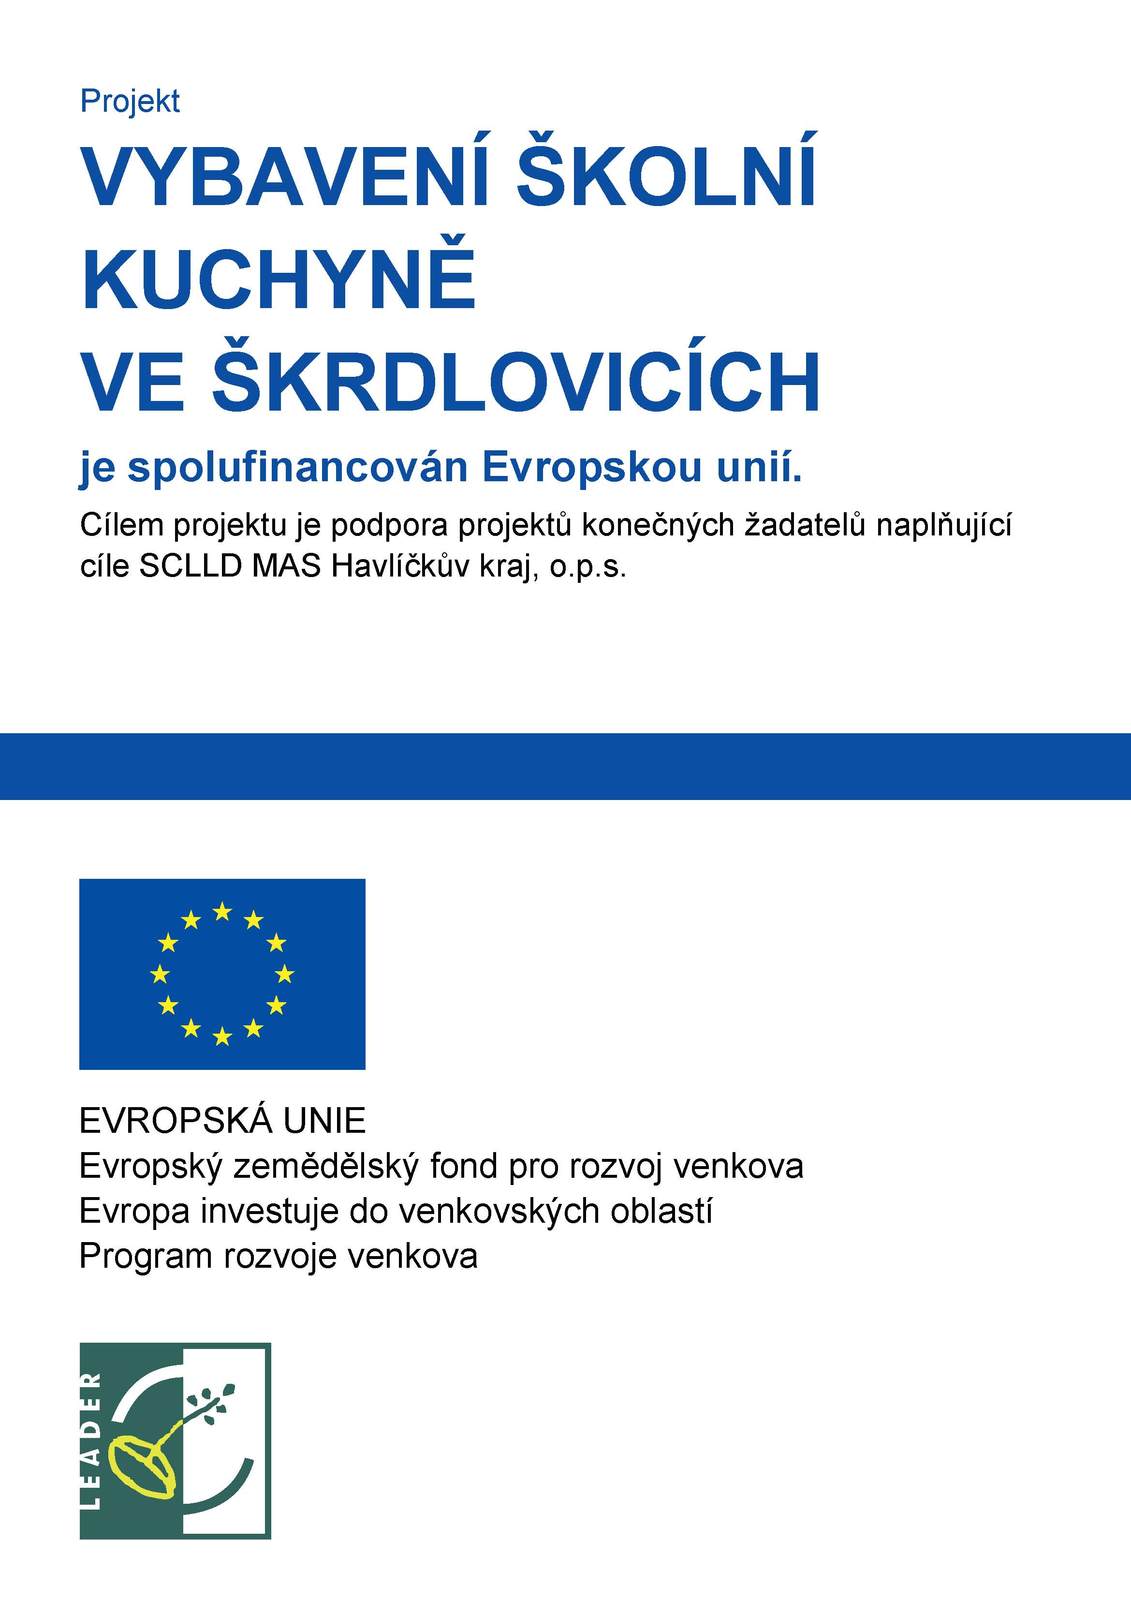 Vybavení školní kuchyne ve Škrdlovicích je spolufinancován Evropskou unií.